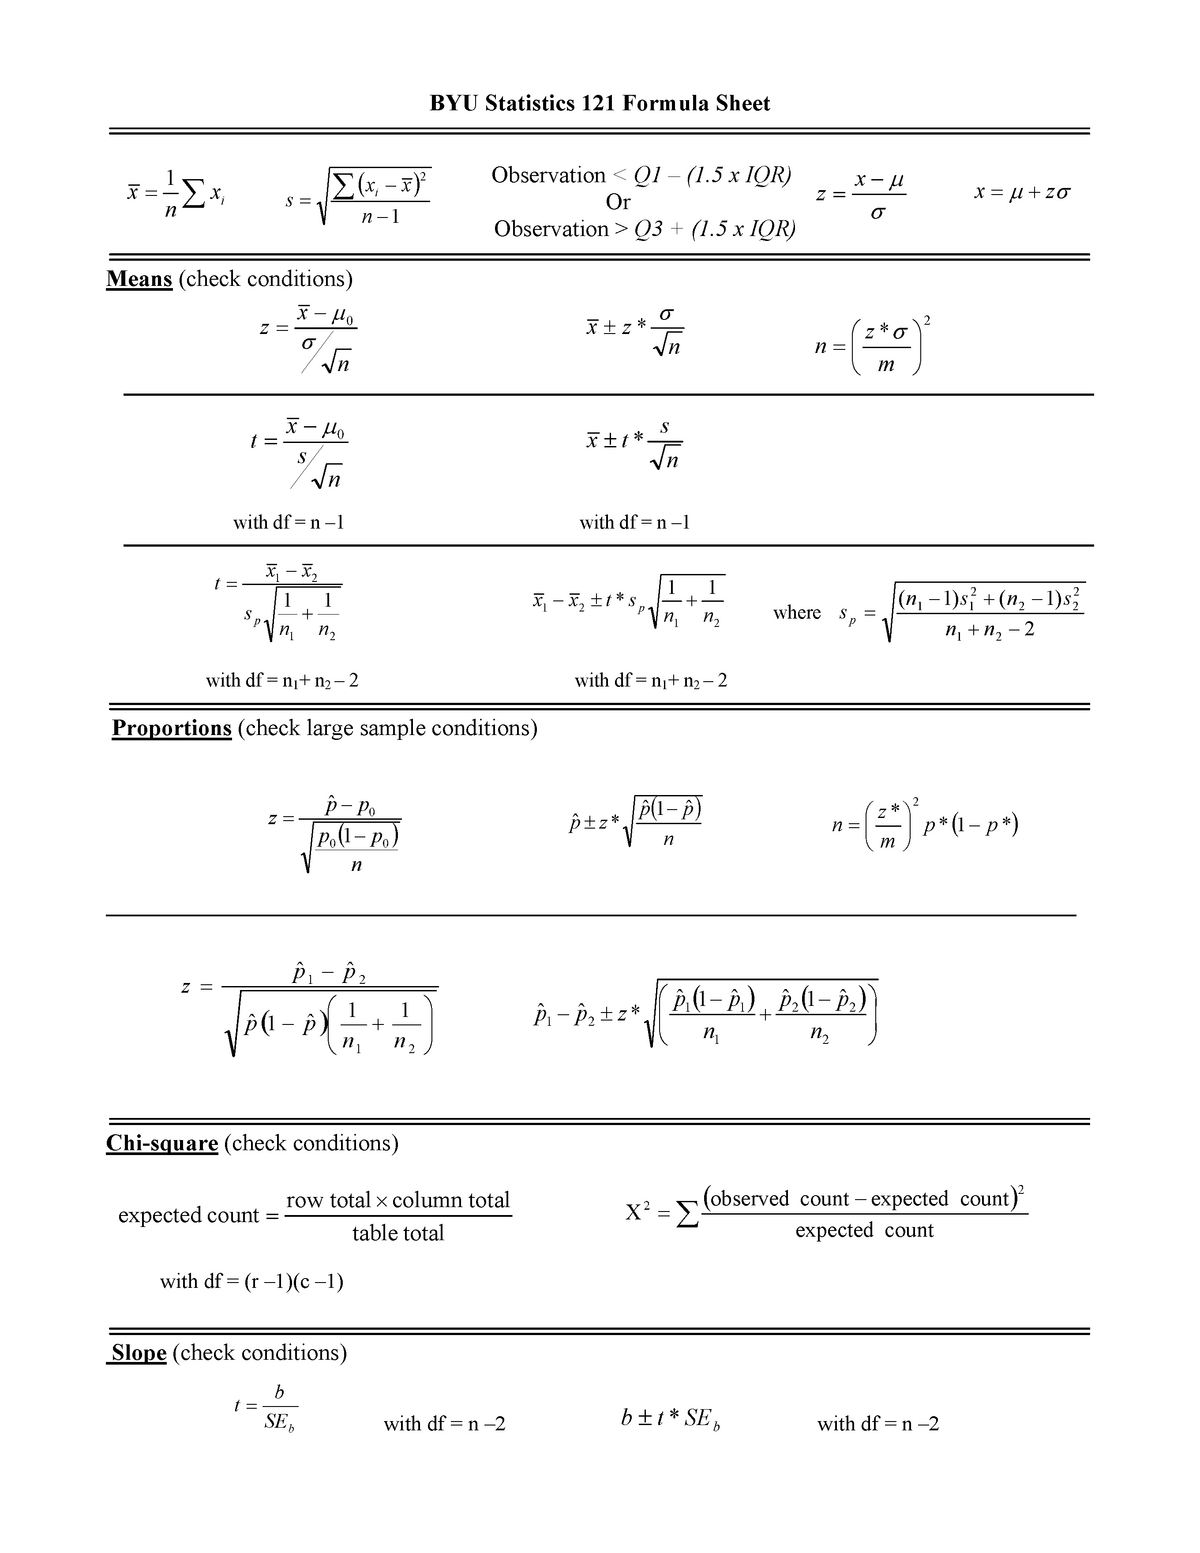 stat121-formula-sheet-1-x-z-byu-statistics-121-formula-sheet-observation